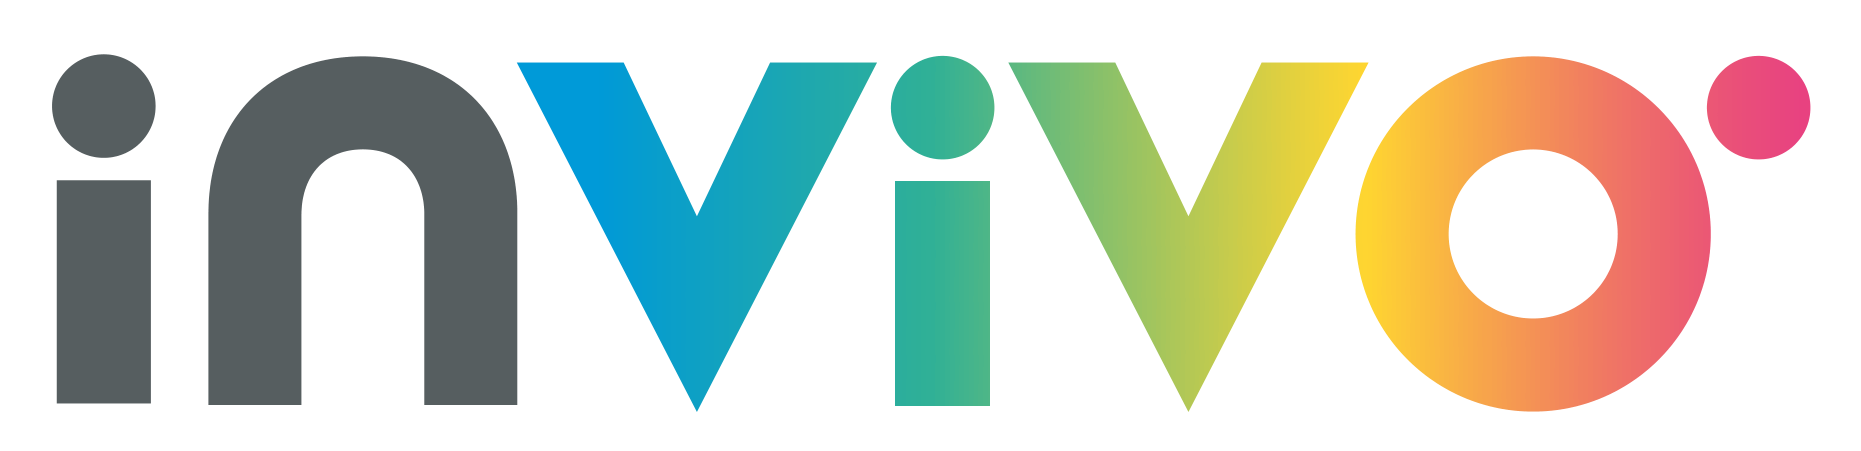 Logo InVivo